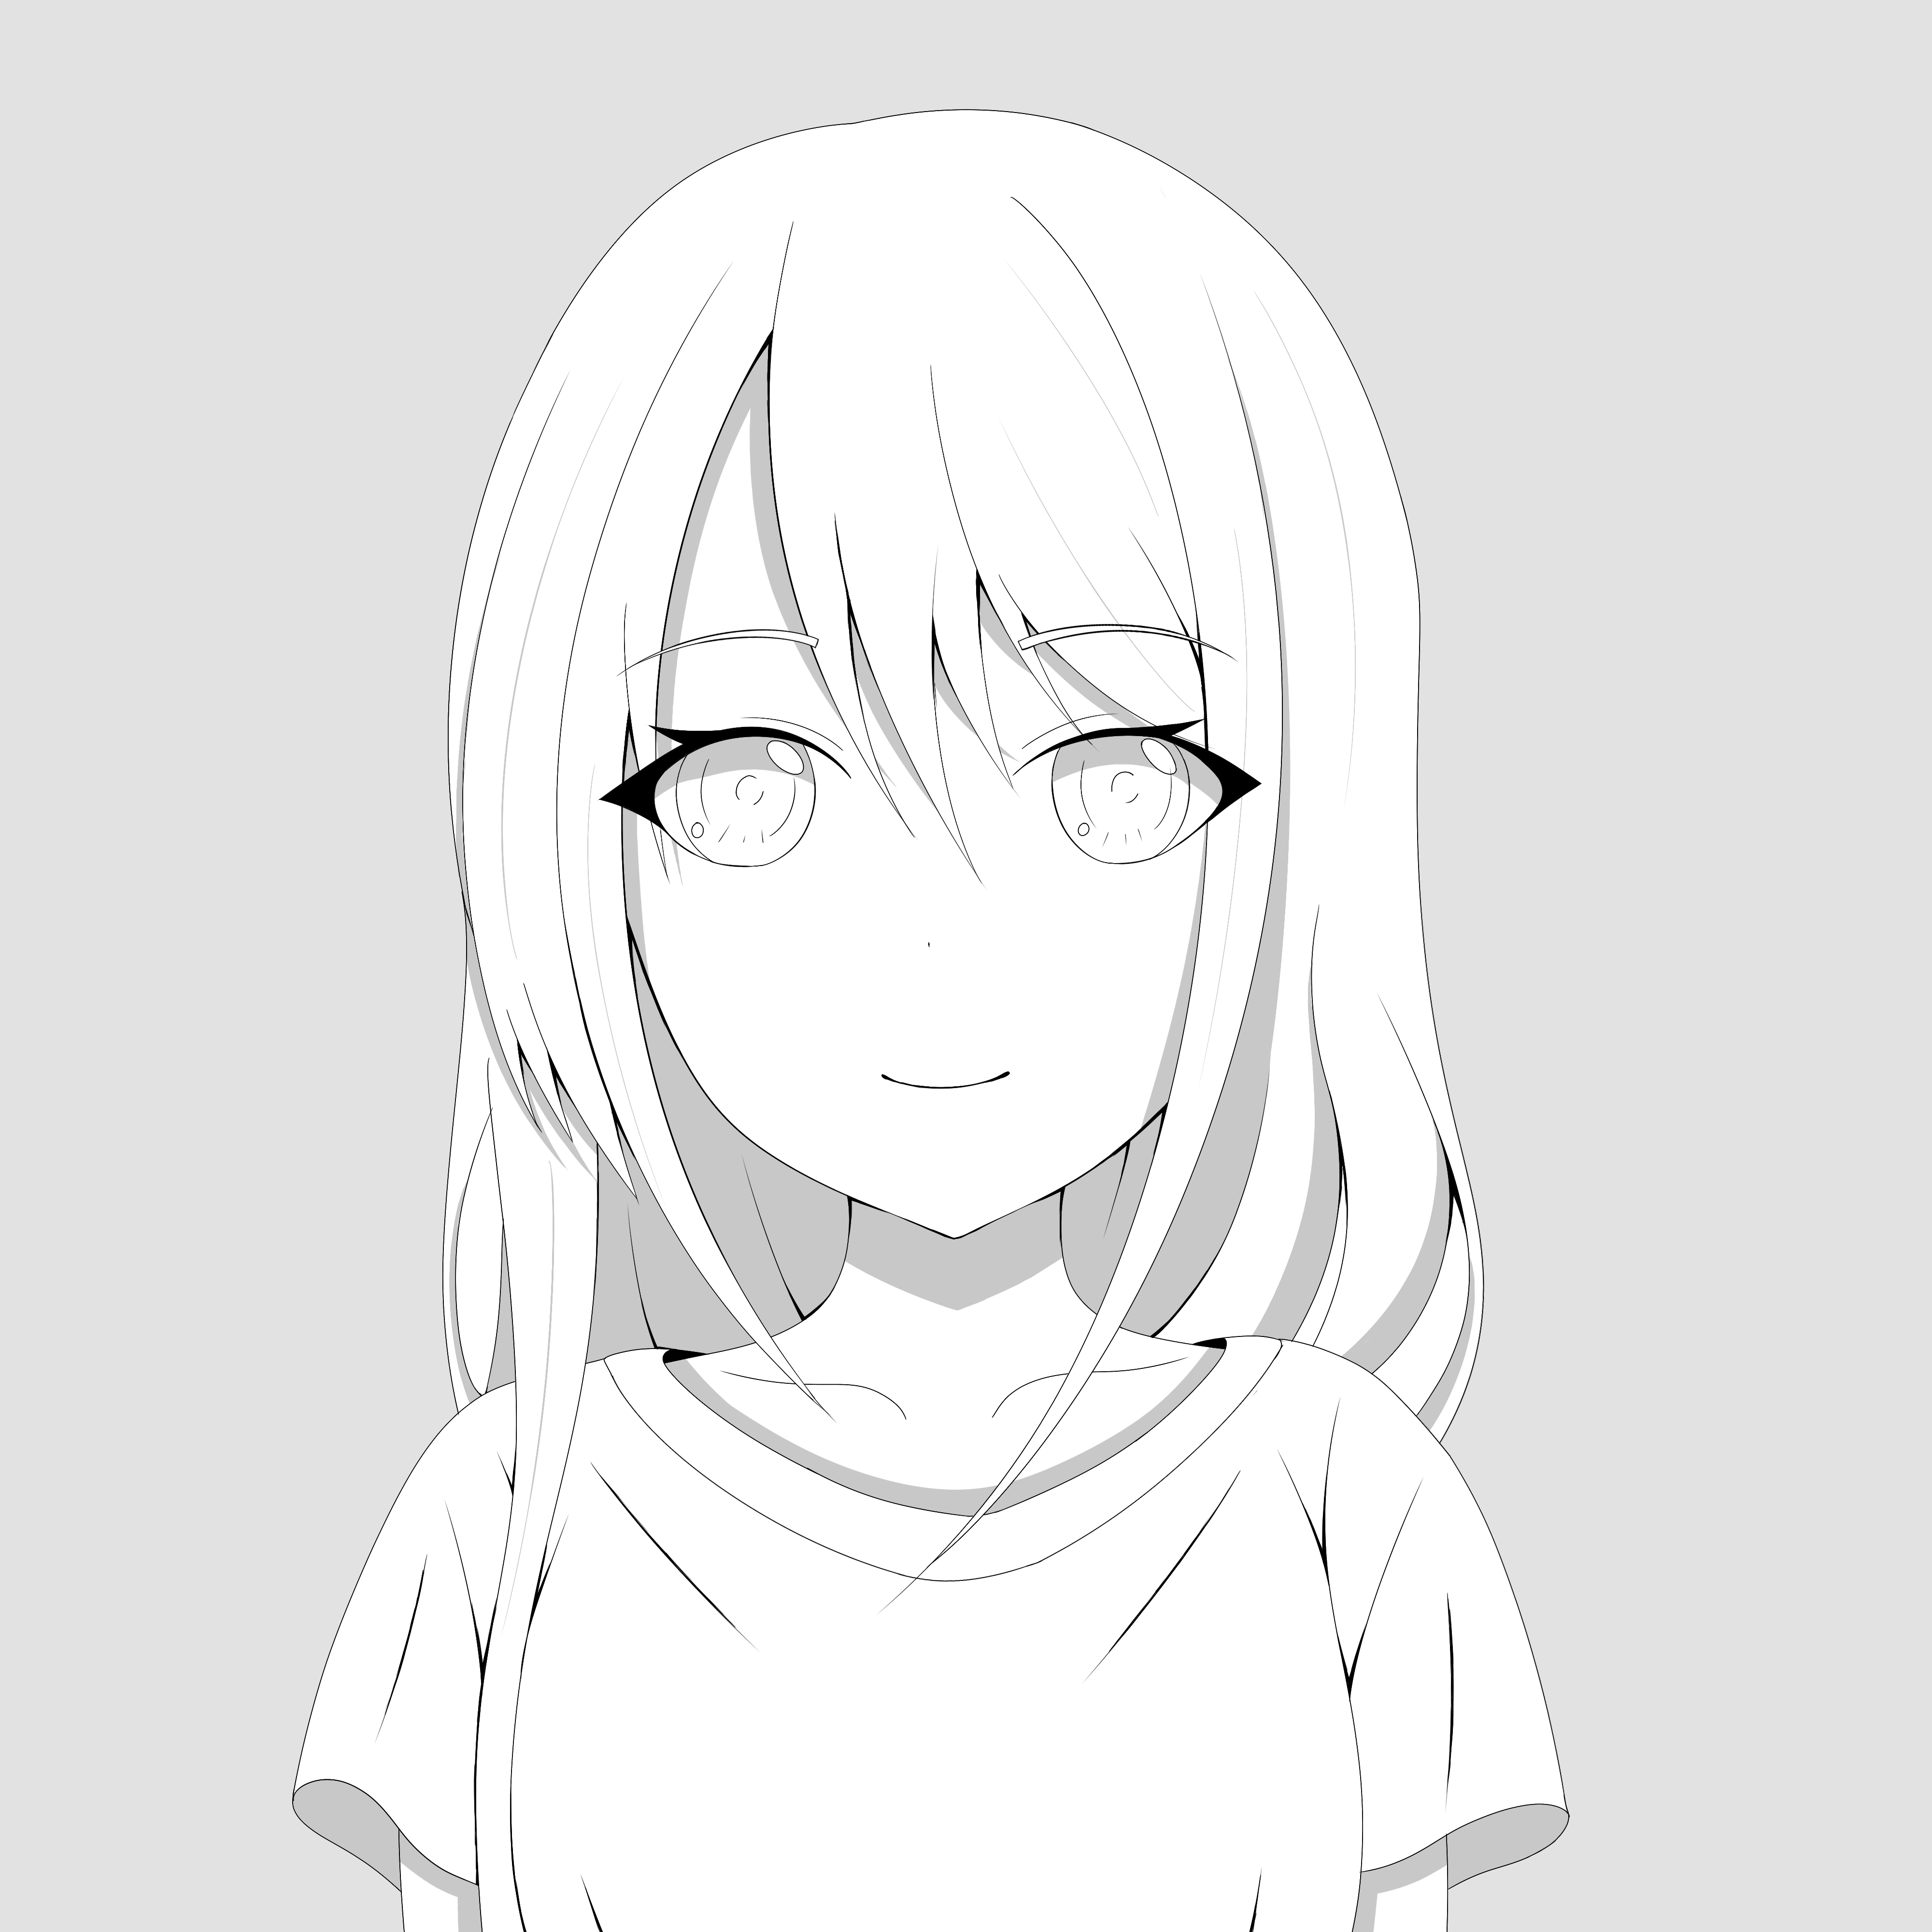 Black/White anime girl by Ghosyboid on DeviantArt